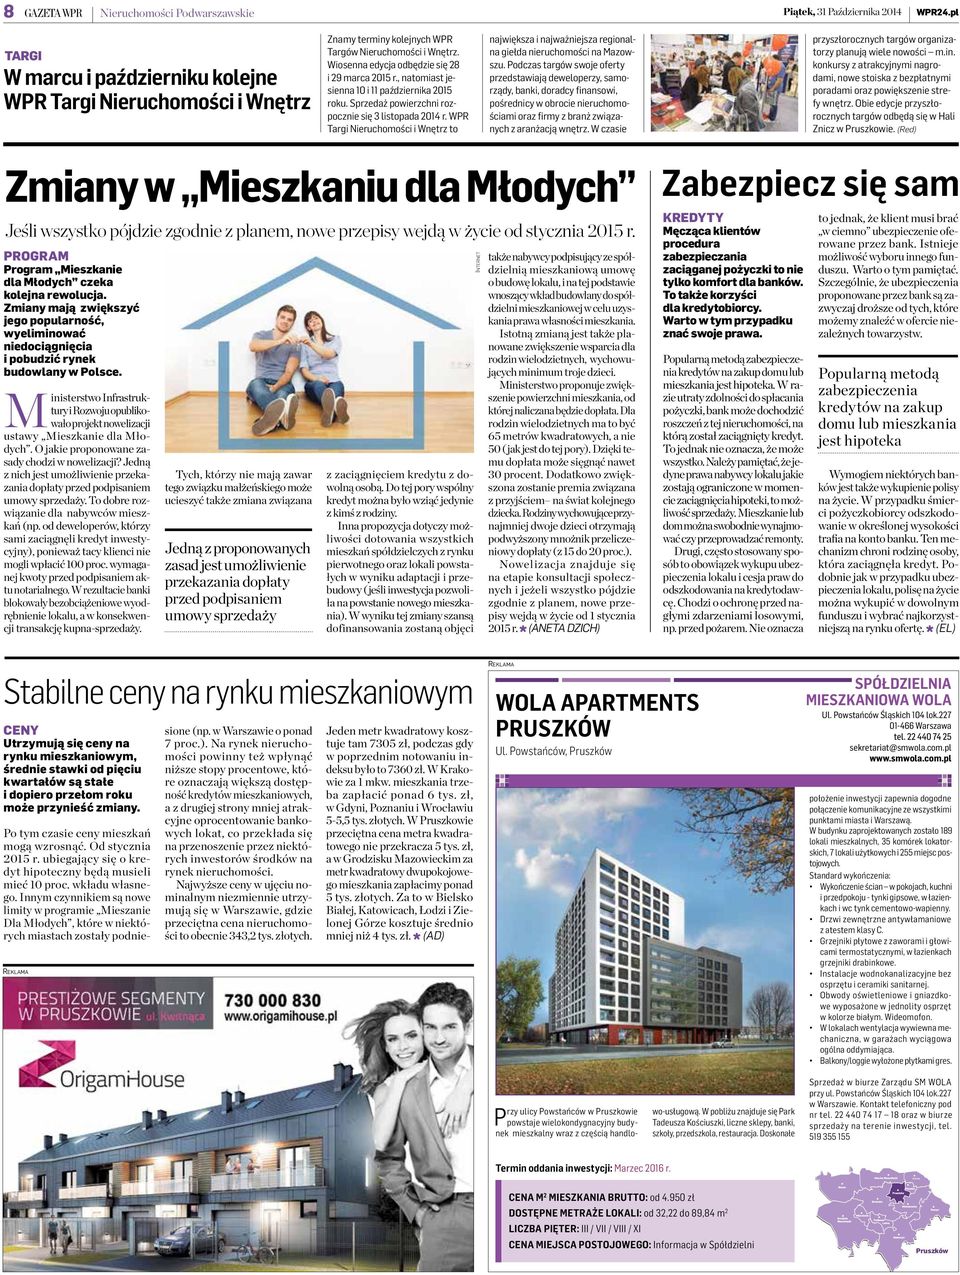 WPR Targi Nieruchomości i Wnętrz to największa i najważniejsza regionalna giełda nieruchomości na Mazowszu.